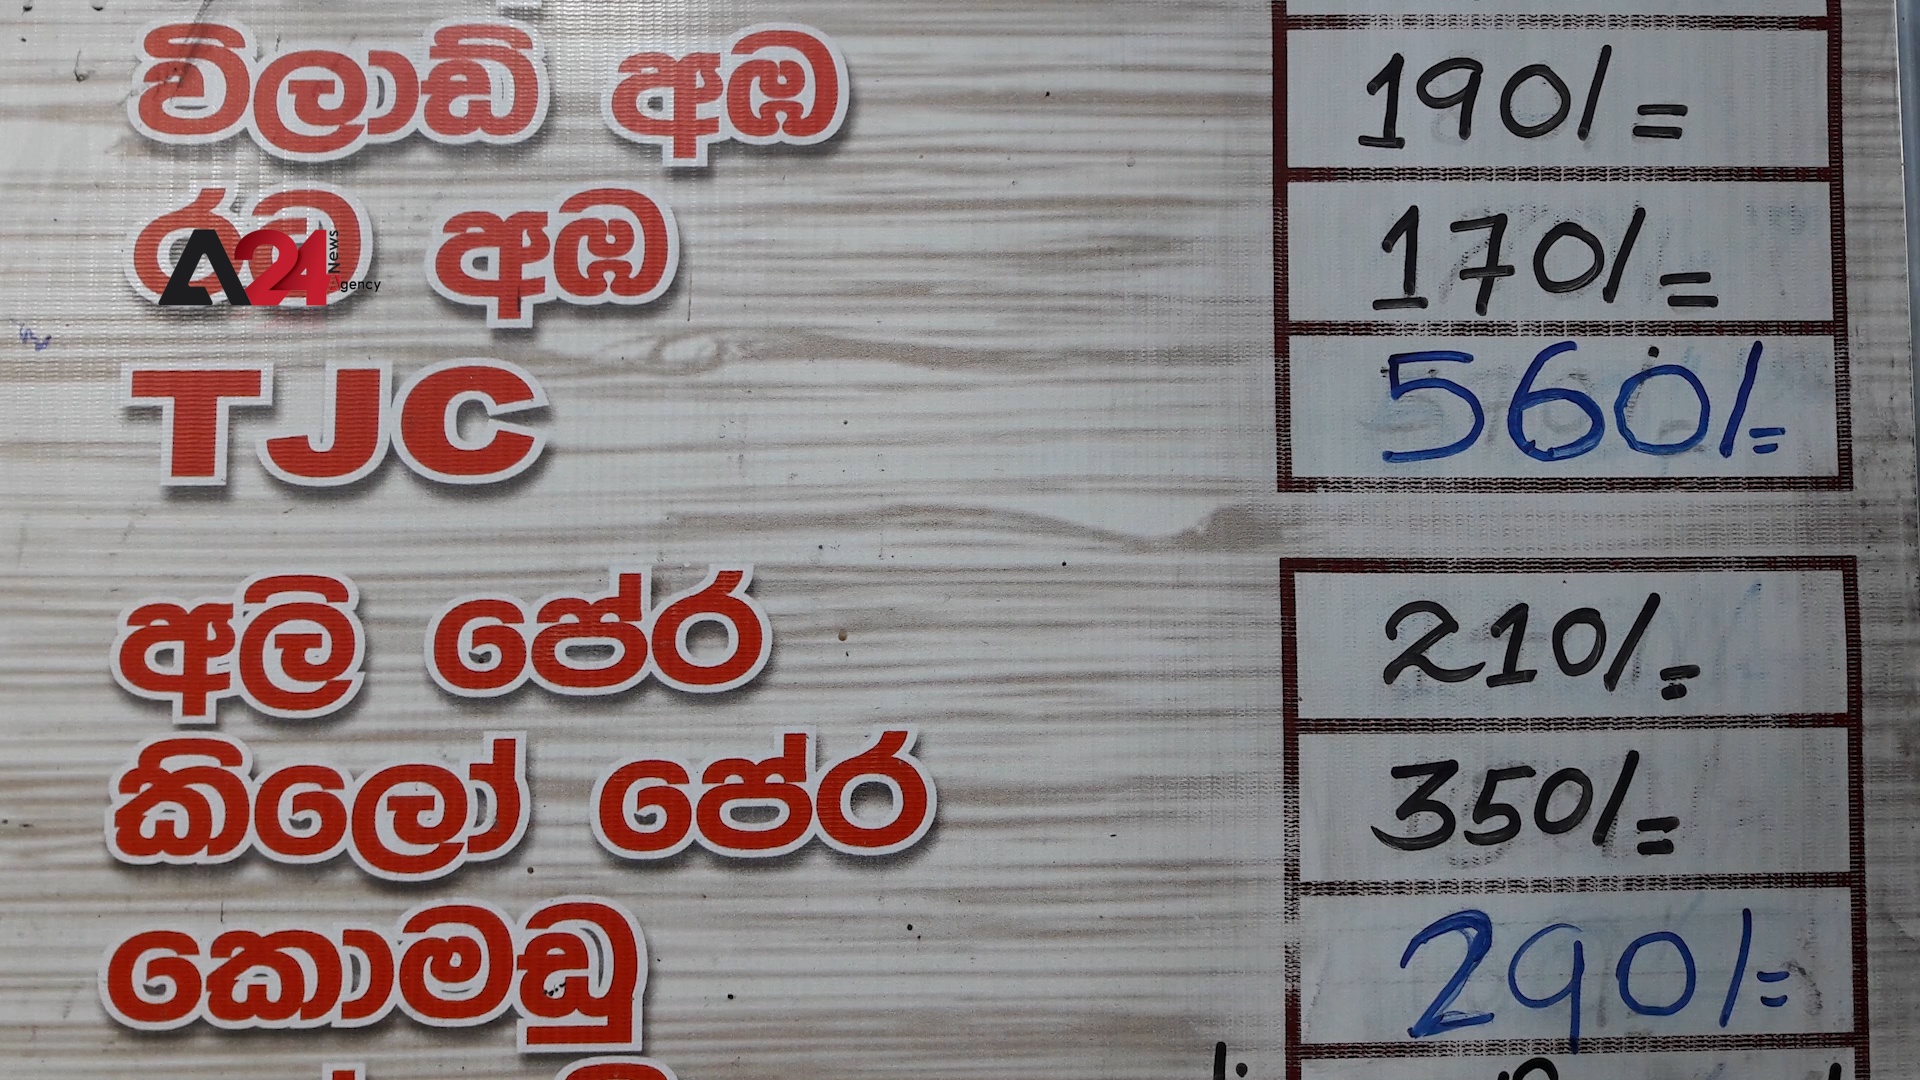 Sri Lanka – Risk of food shortage after fertilizers ban